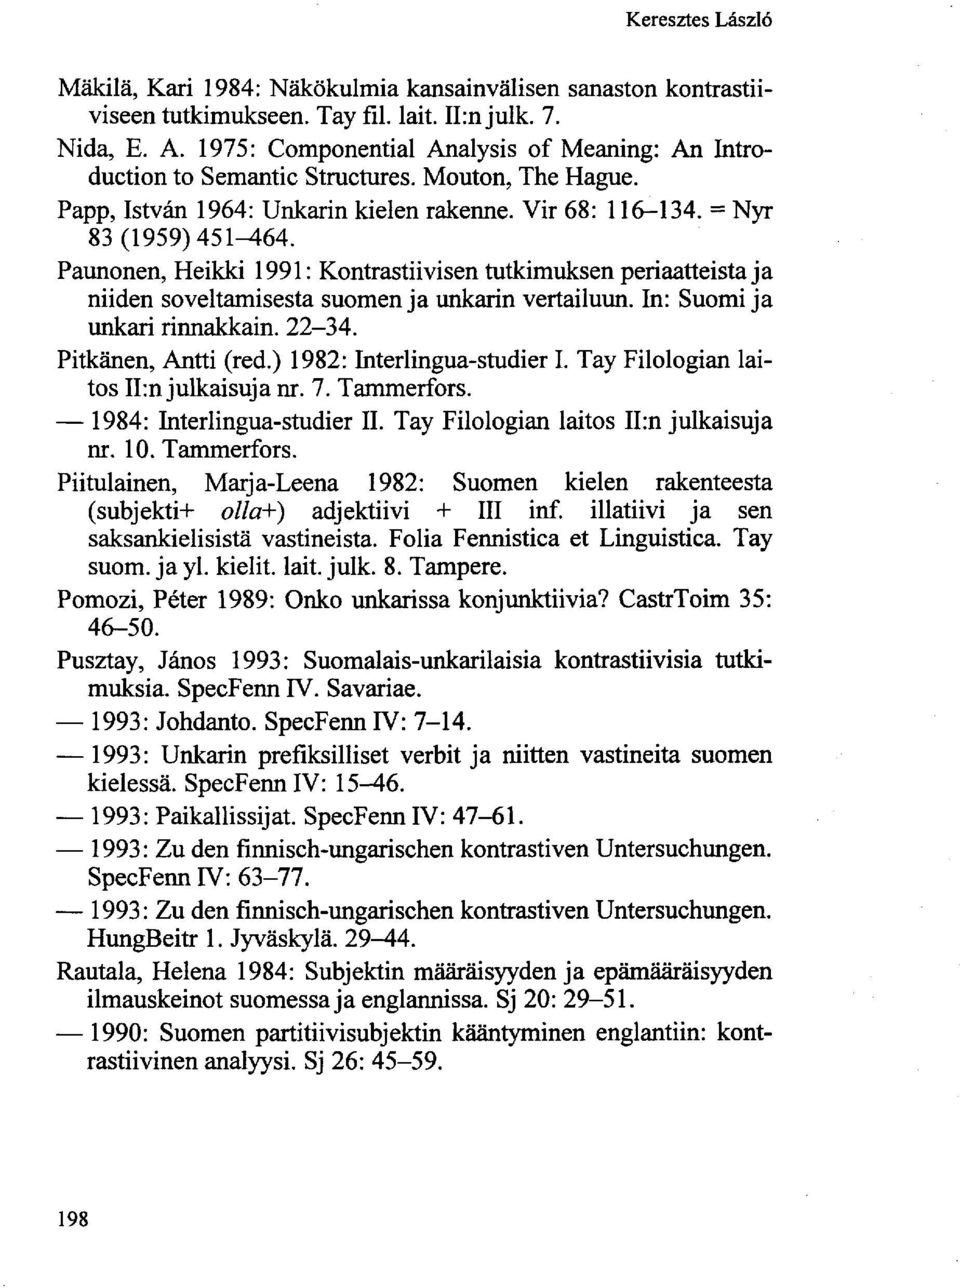 Paunonen, Heikki 1991: Kontrastiivisen tutkimuksen periaatteista ja niiden soveltamisesta suomen ja unkarin vertailuun. In: Suomi ja unkari rinnakkain. 22-34. Pitkänen, Antti (red.